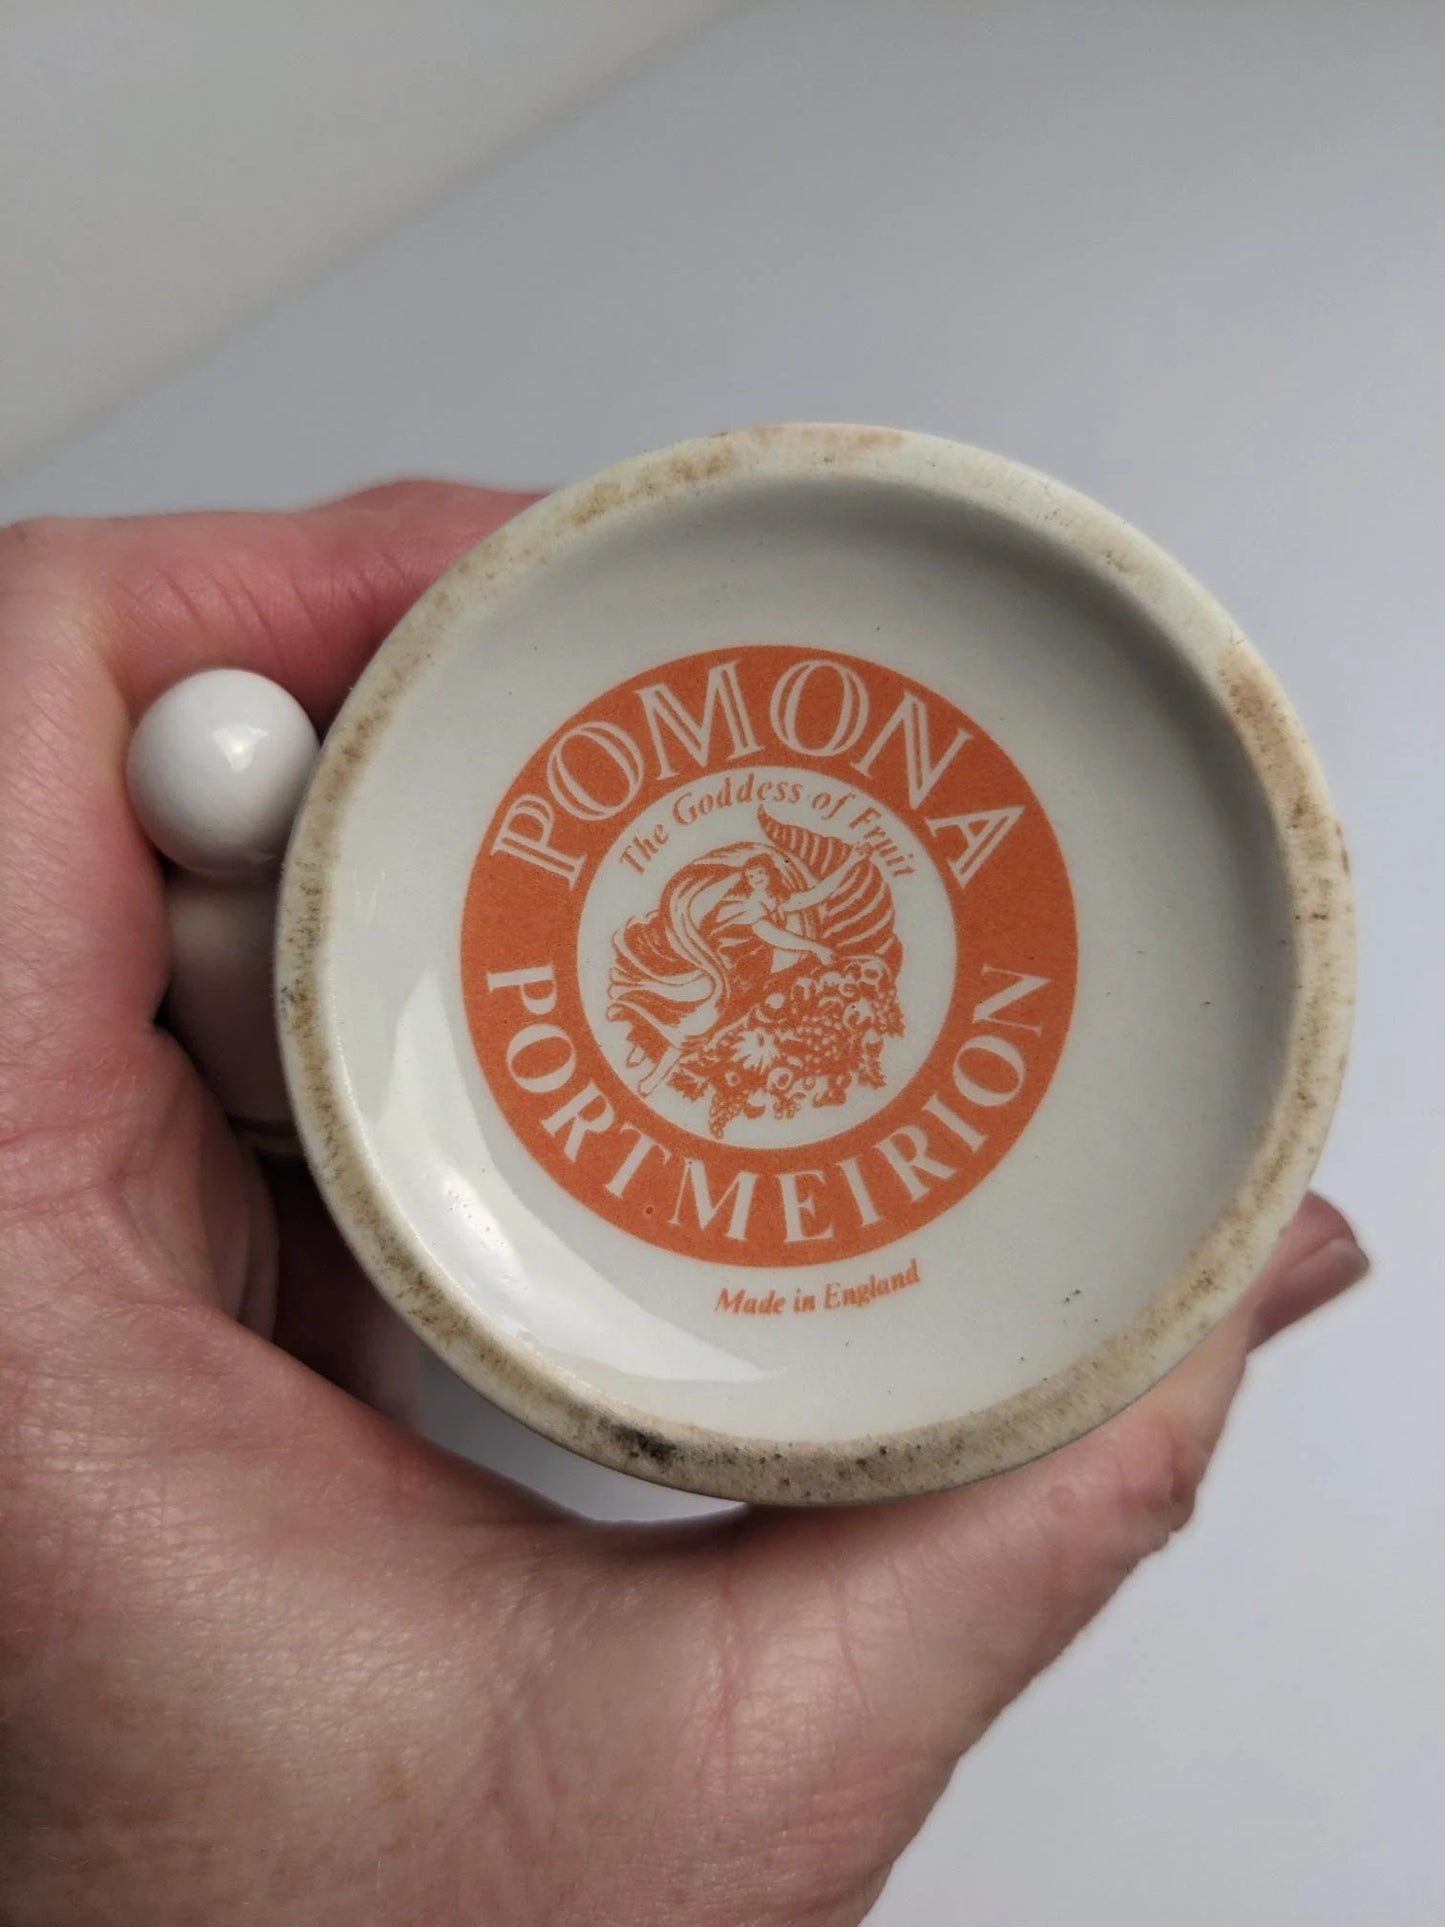 Pomona Portmeirion Plum Oil and Vinegar Bottles, Made in England